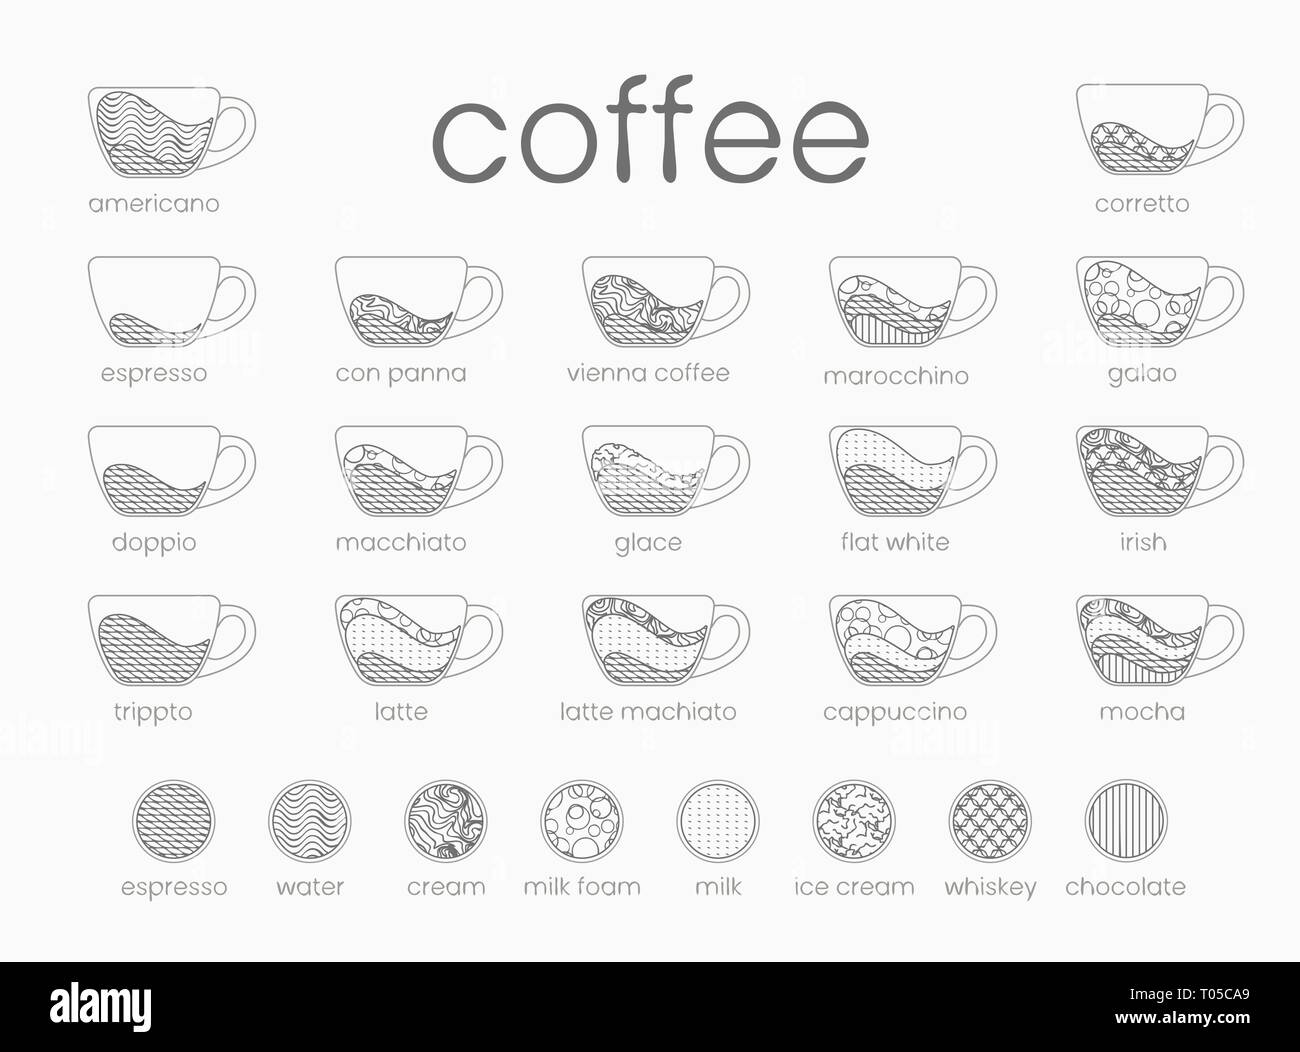 Ligne vectorielle infographie du café. Les proportions des recettes, sur fond blanc. Maison du Café menu. Vector illustration. Spe8 Illustration de Vecteur